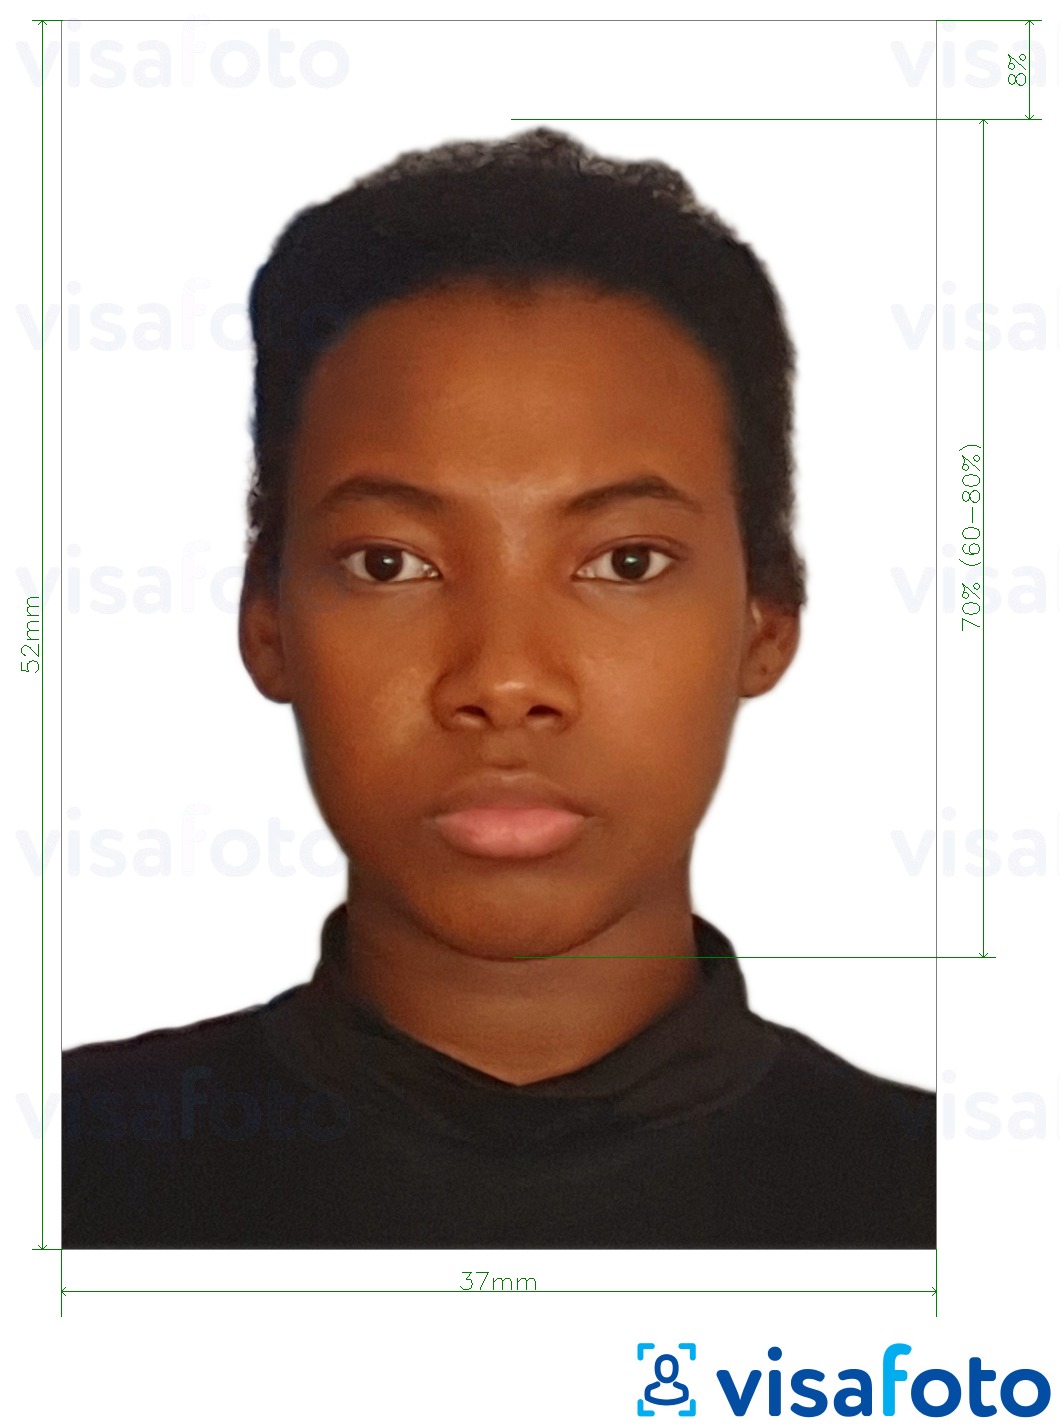 Primjer fotografije za Namibijska viza 37x52mm (3.7x5.2 cm) s točno određenom veličinom